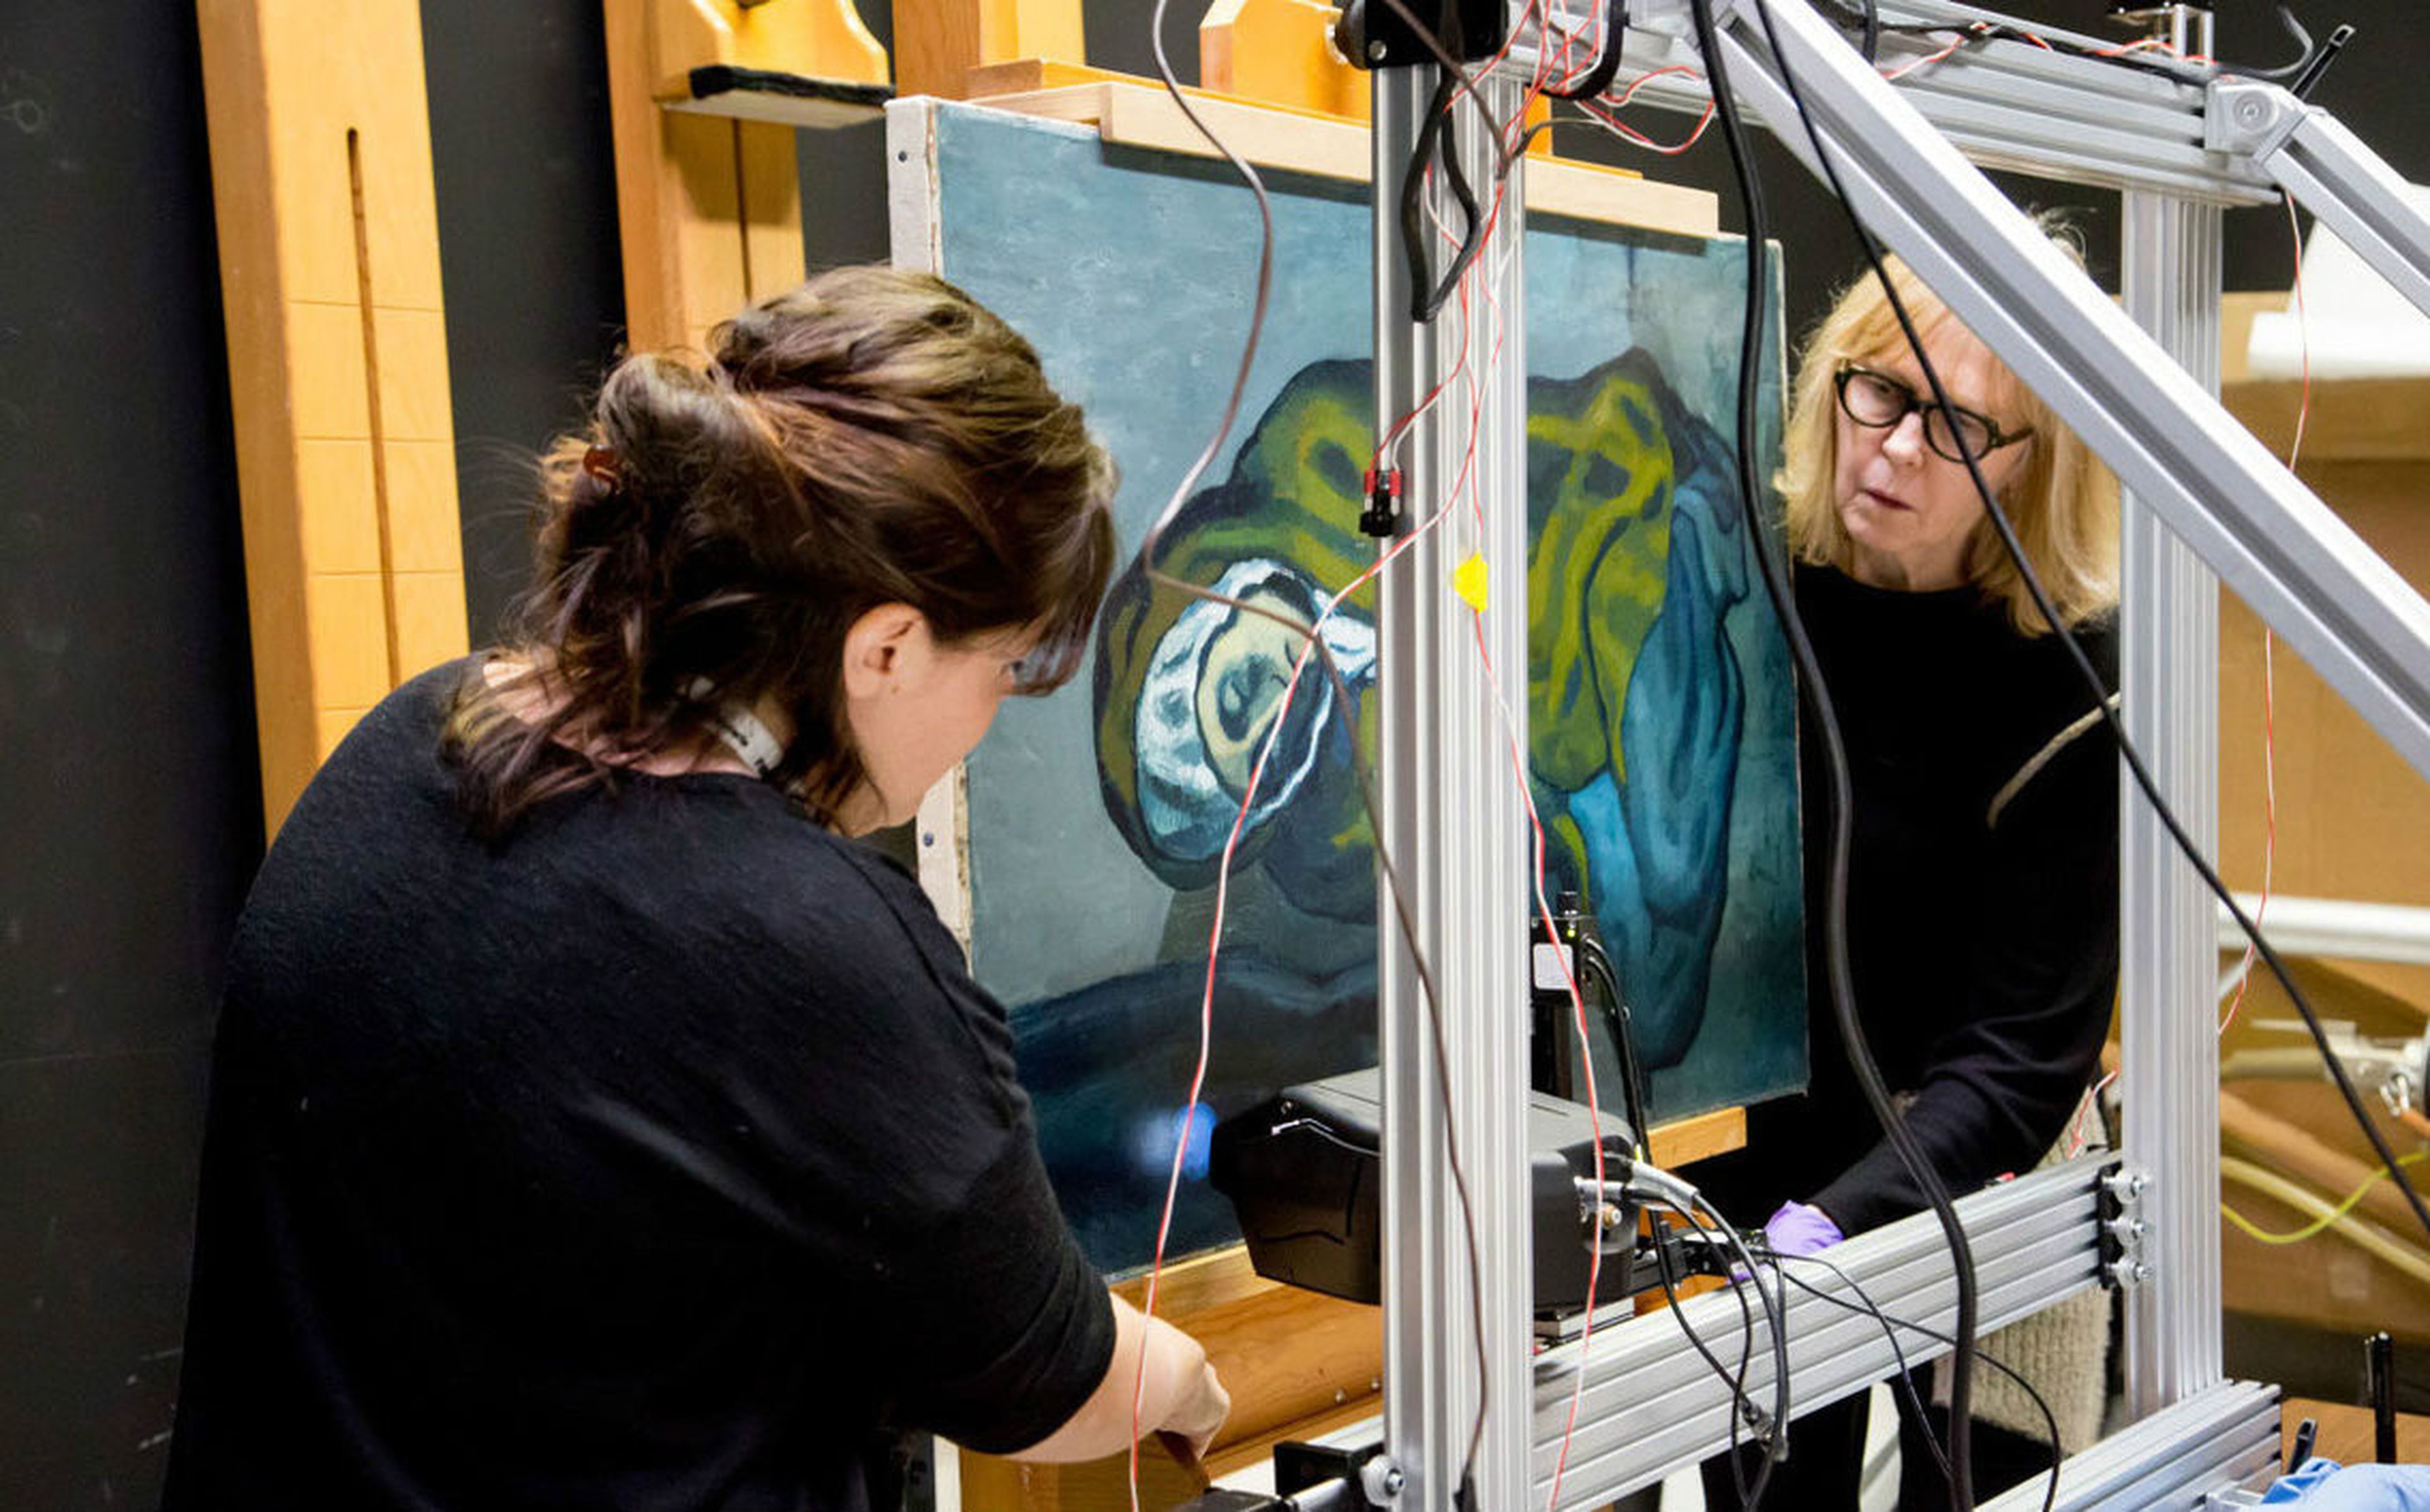 Investigadores de NU-ACCESS instalan una máquina portátil de rayos X en la Galería de Arte de Ontario (Canadá) para analizar el trabajo de Pablo Picasso.